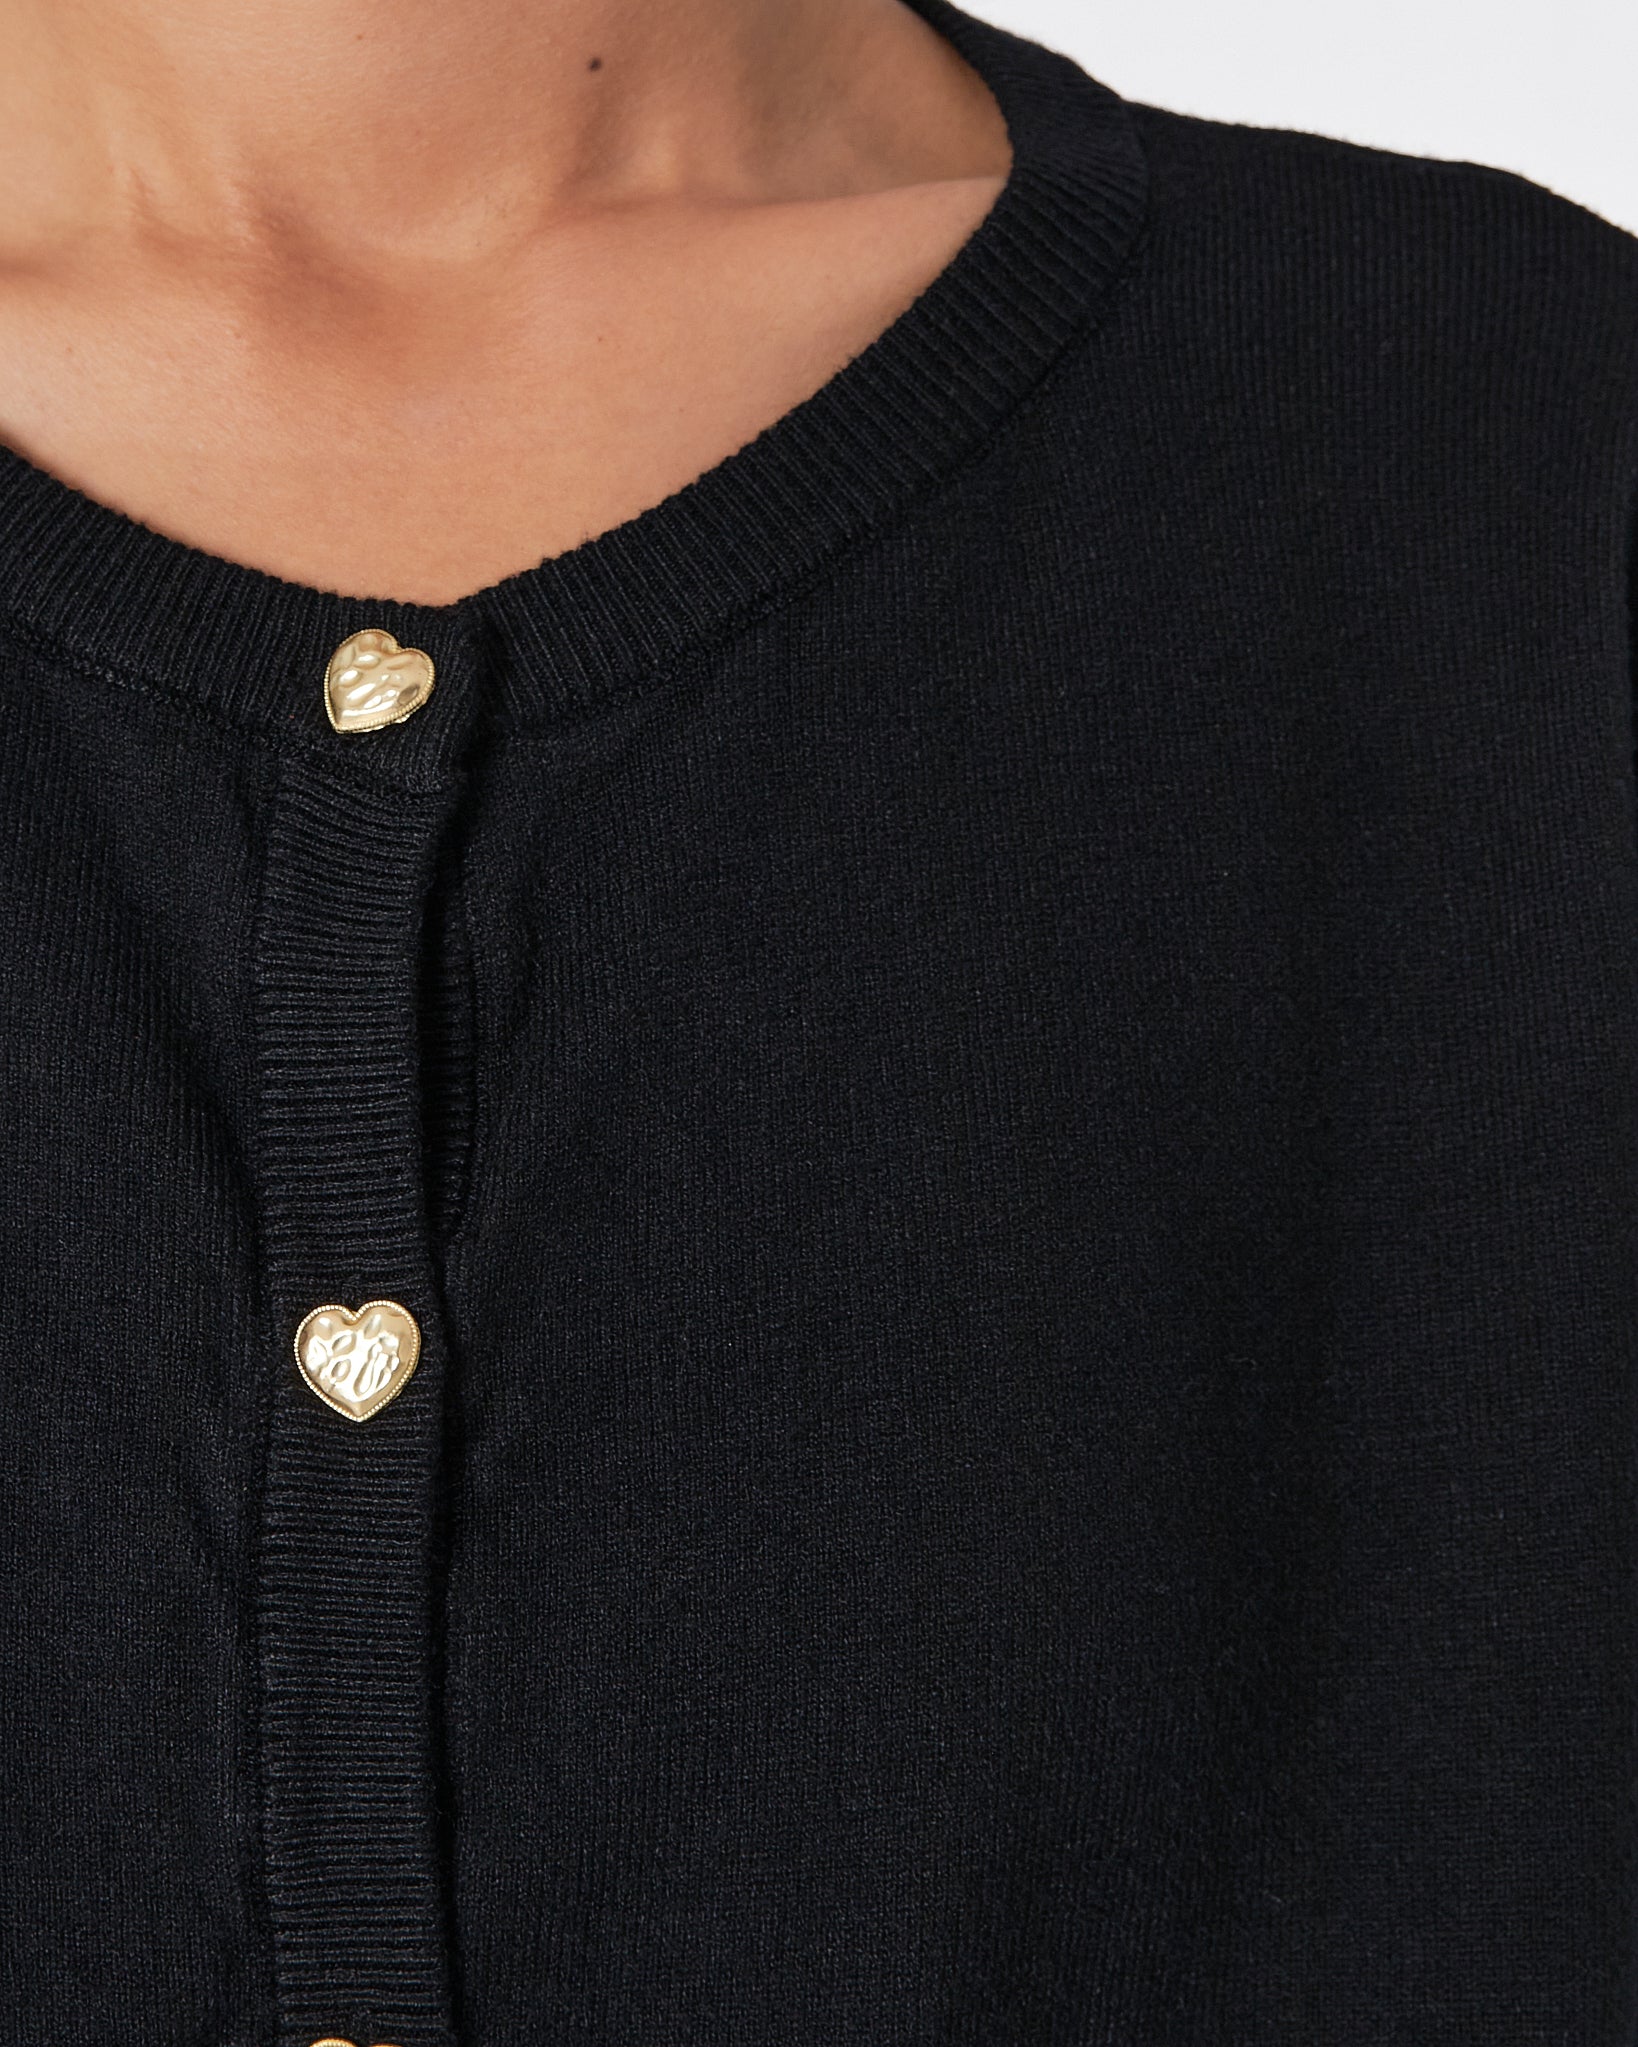 Plain Color Lady Soft Knit Black Cardigan 18.90